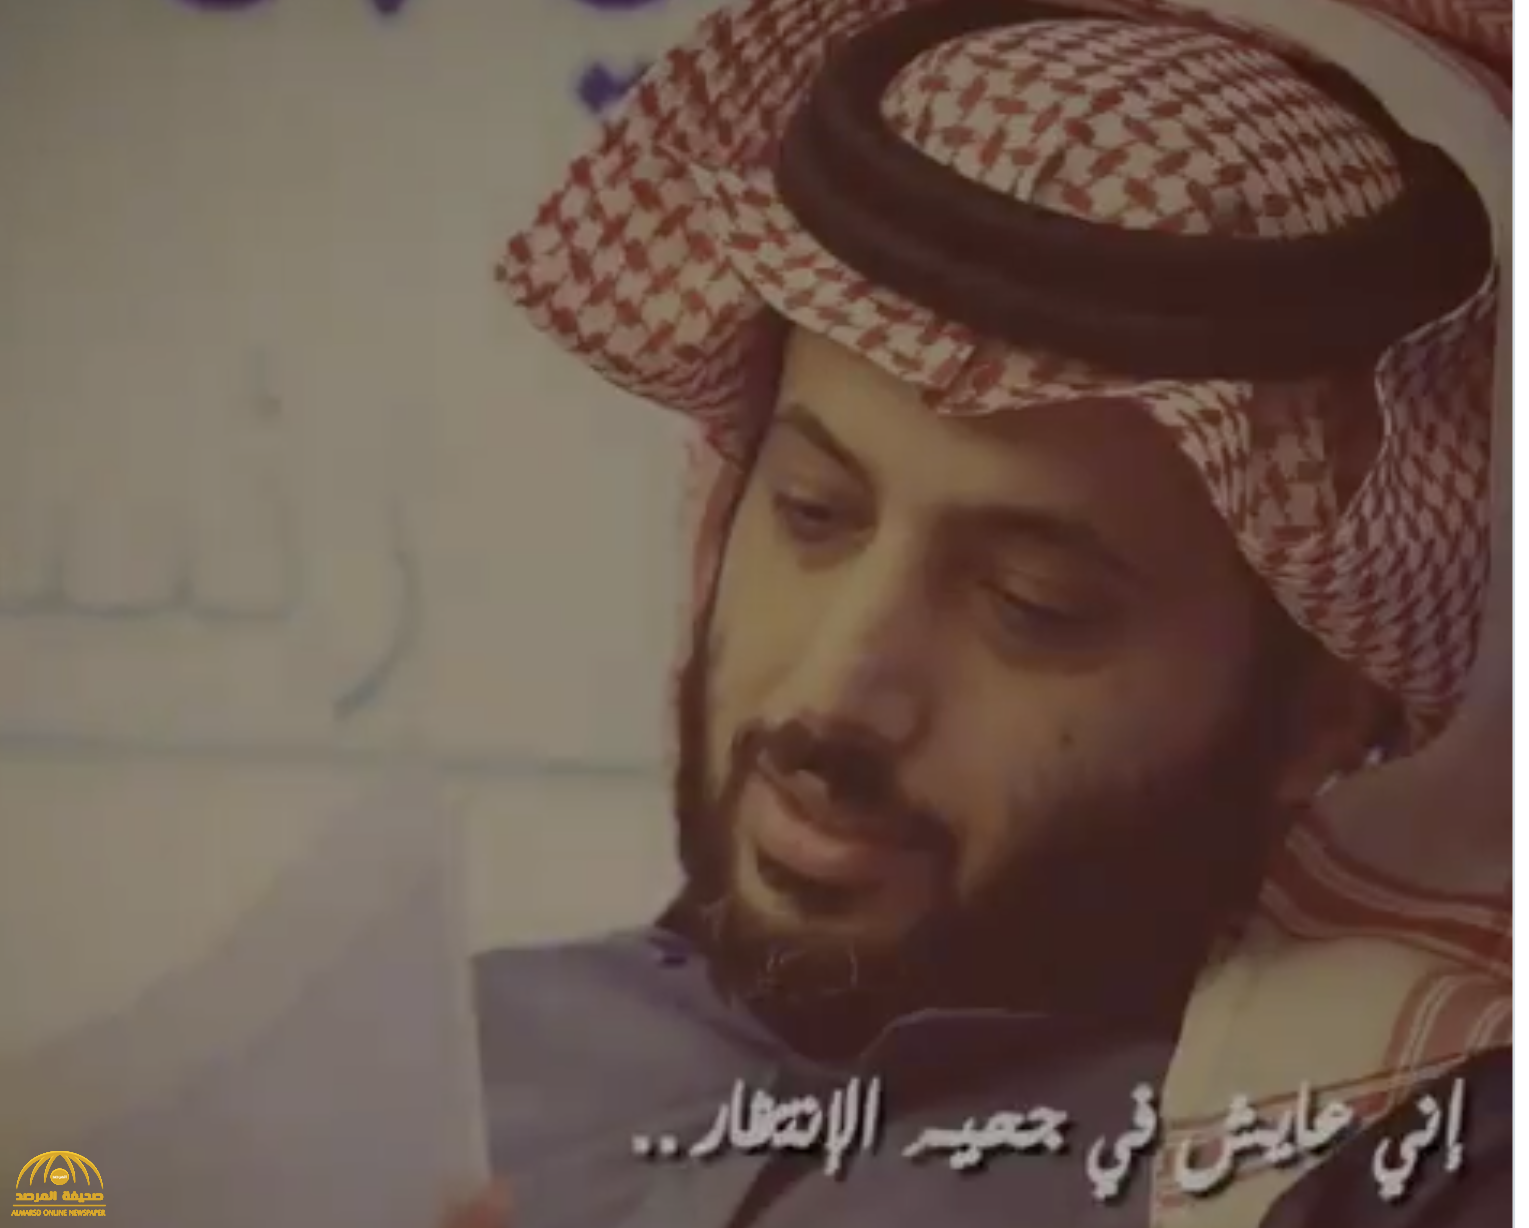 شاهد: آل الشيخ يغرد من أمريكا بأغنية لـ"محمد عبده" ويكشف مدى اشتياقه للسعودية!